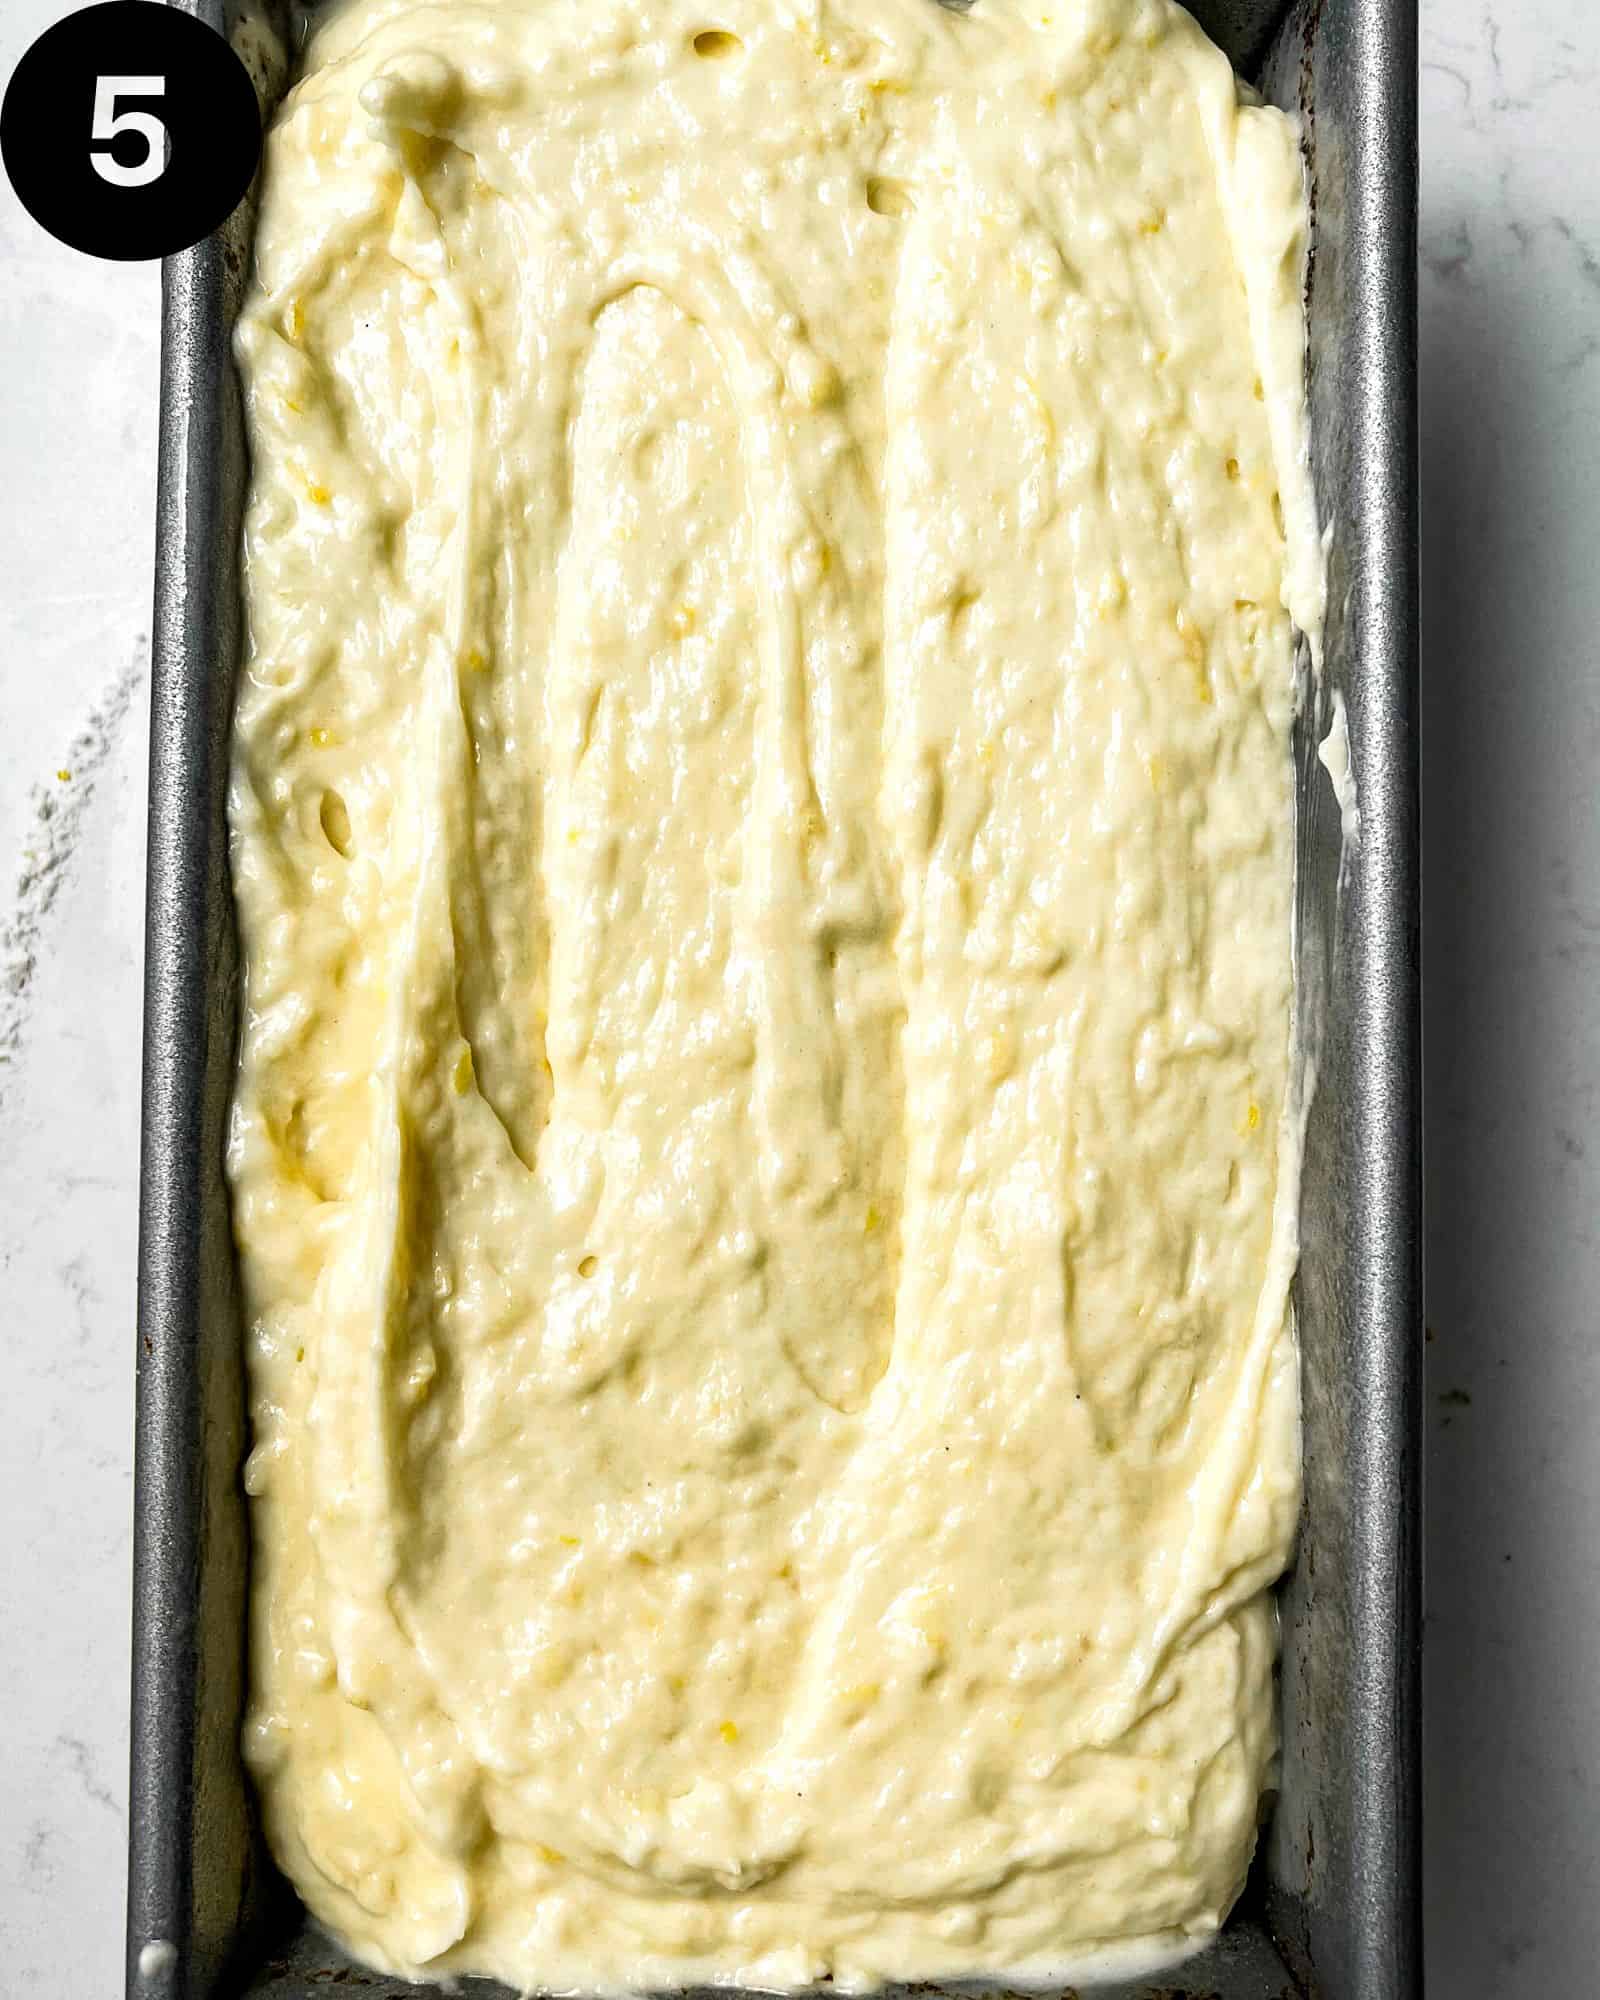 Lemon Loaf cake batter in a loaf pan.